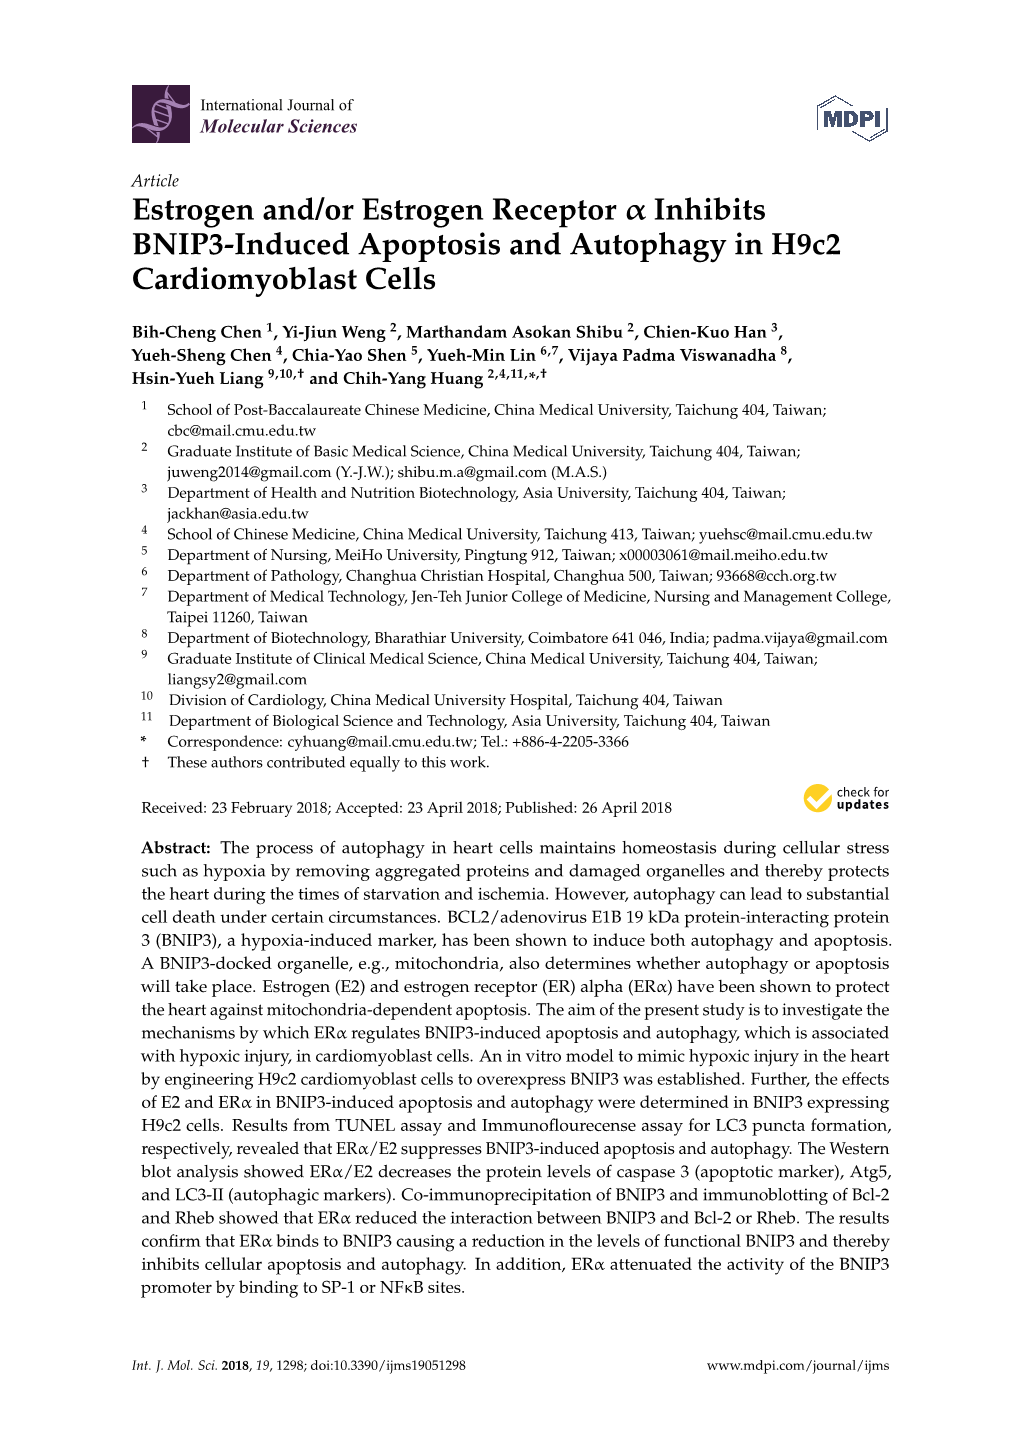 Estrogen And/Or Estrogen Receptor Inhibits BNIP3-Induced Apoptosis